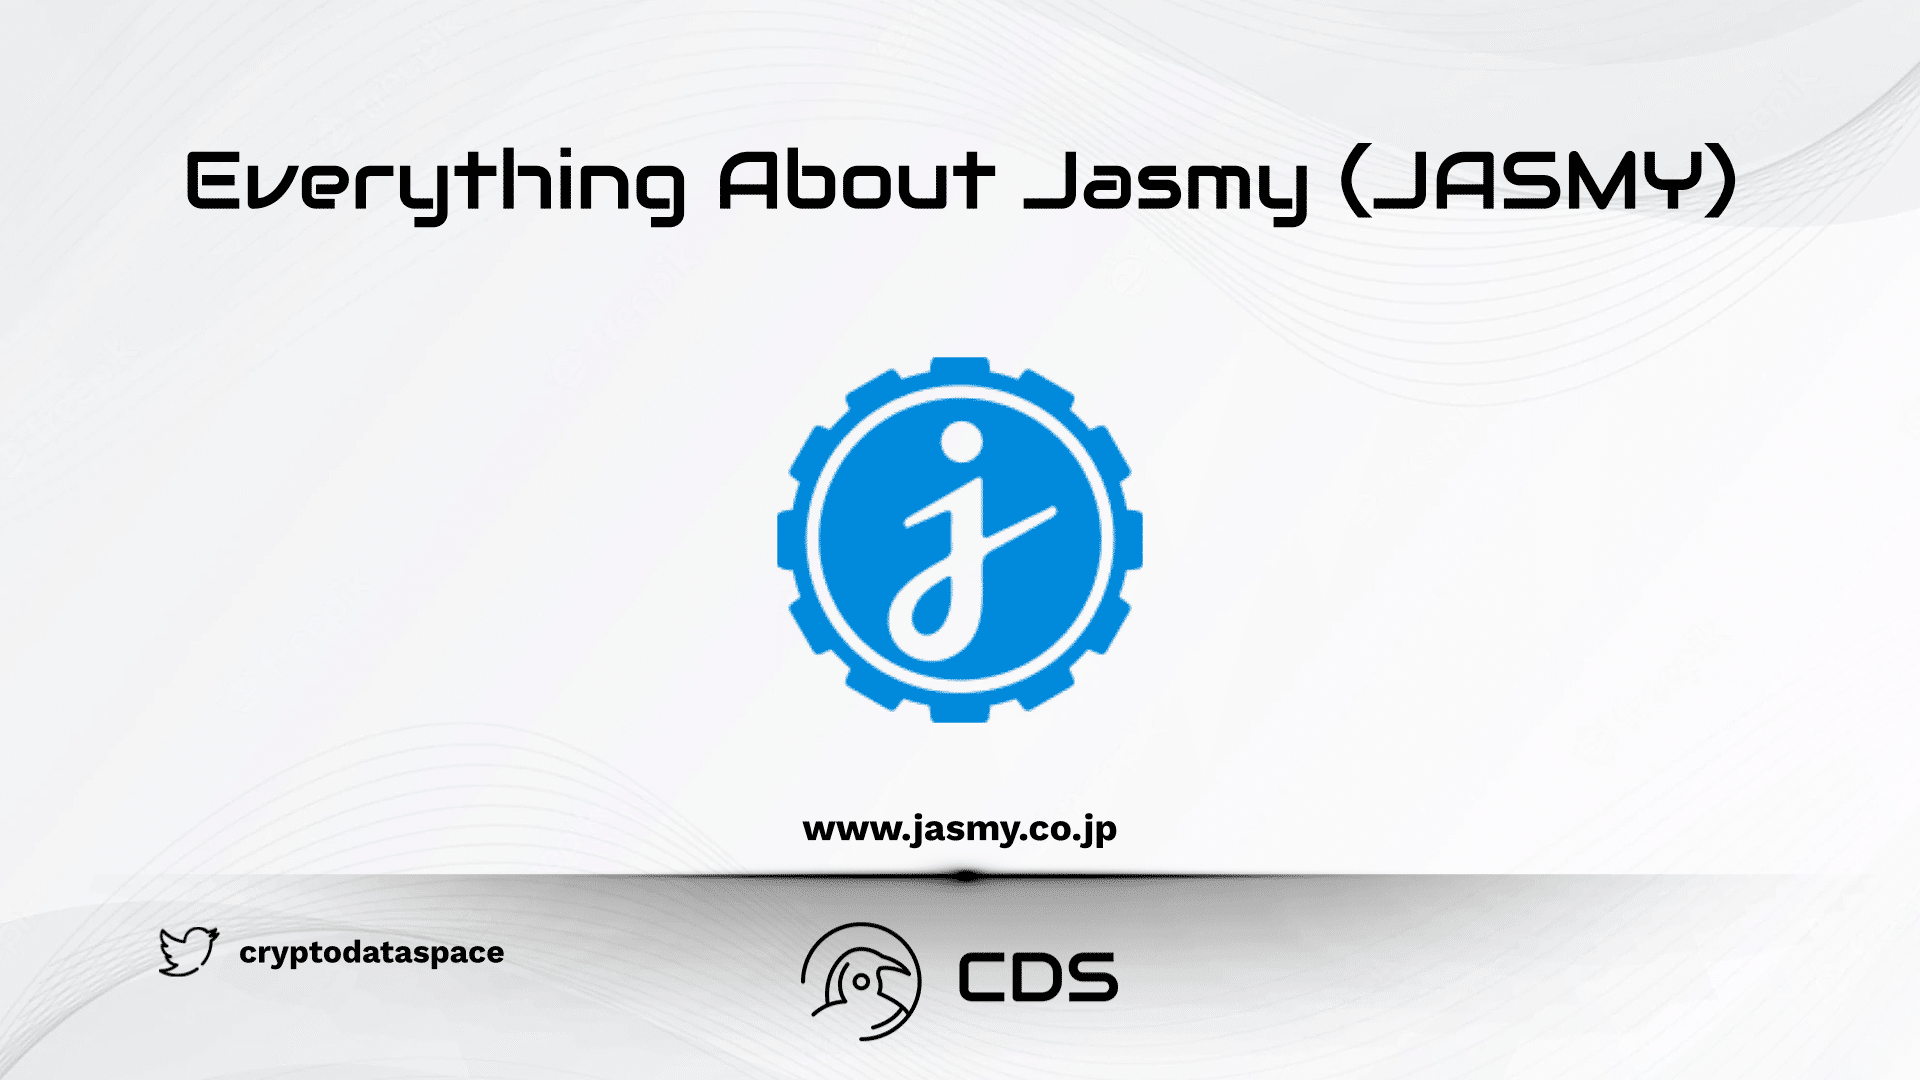 Everything about Jasmy (JASMY)